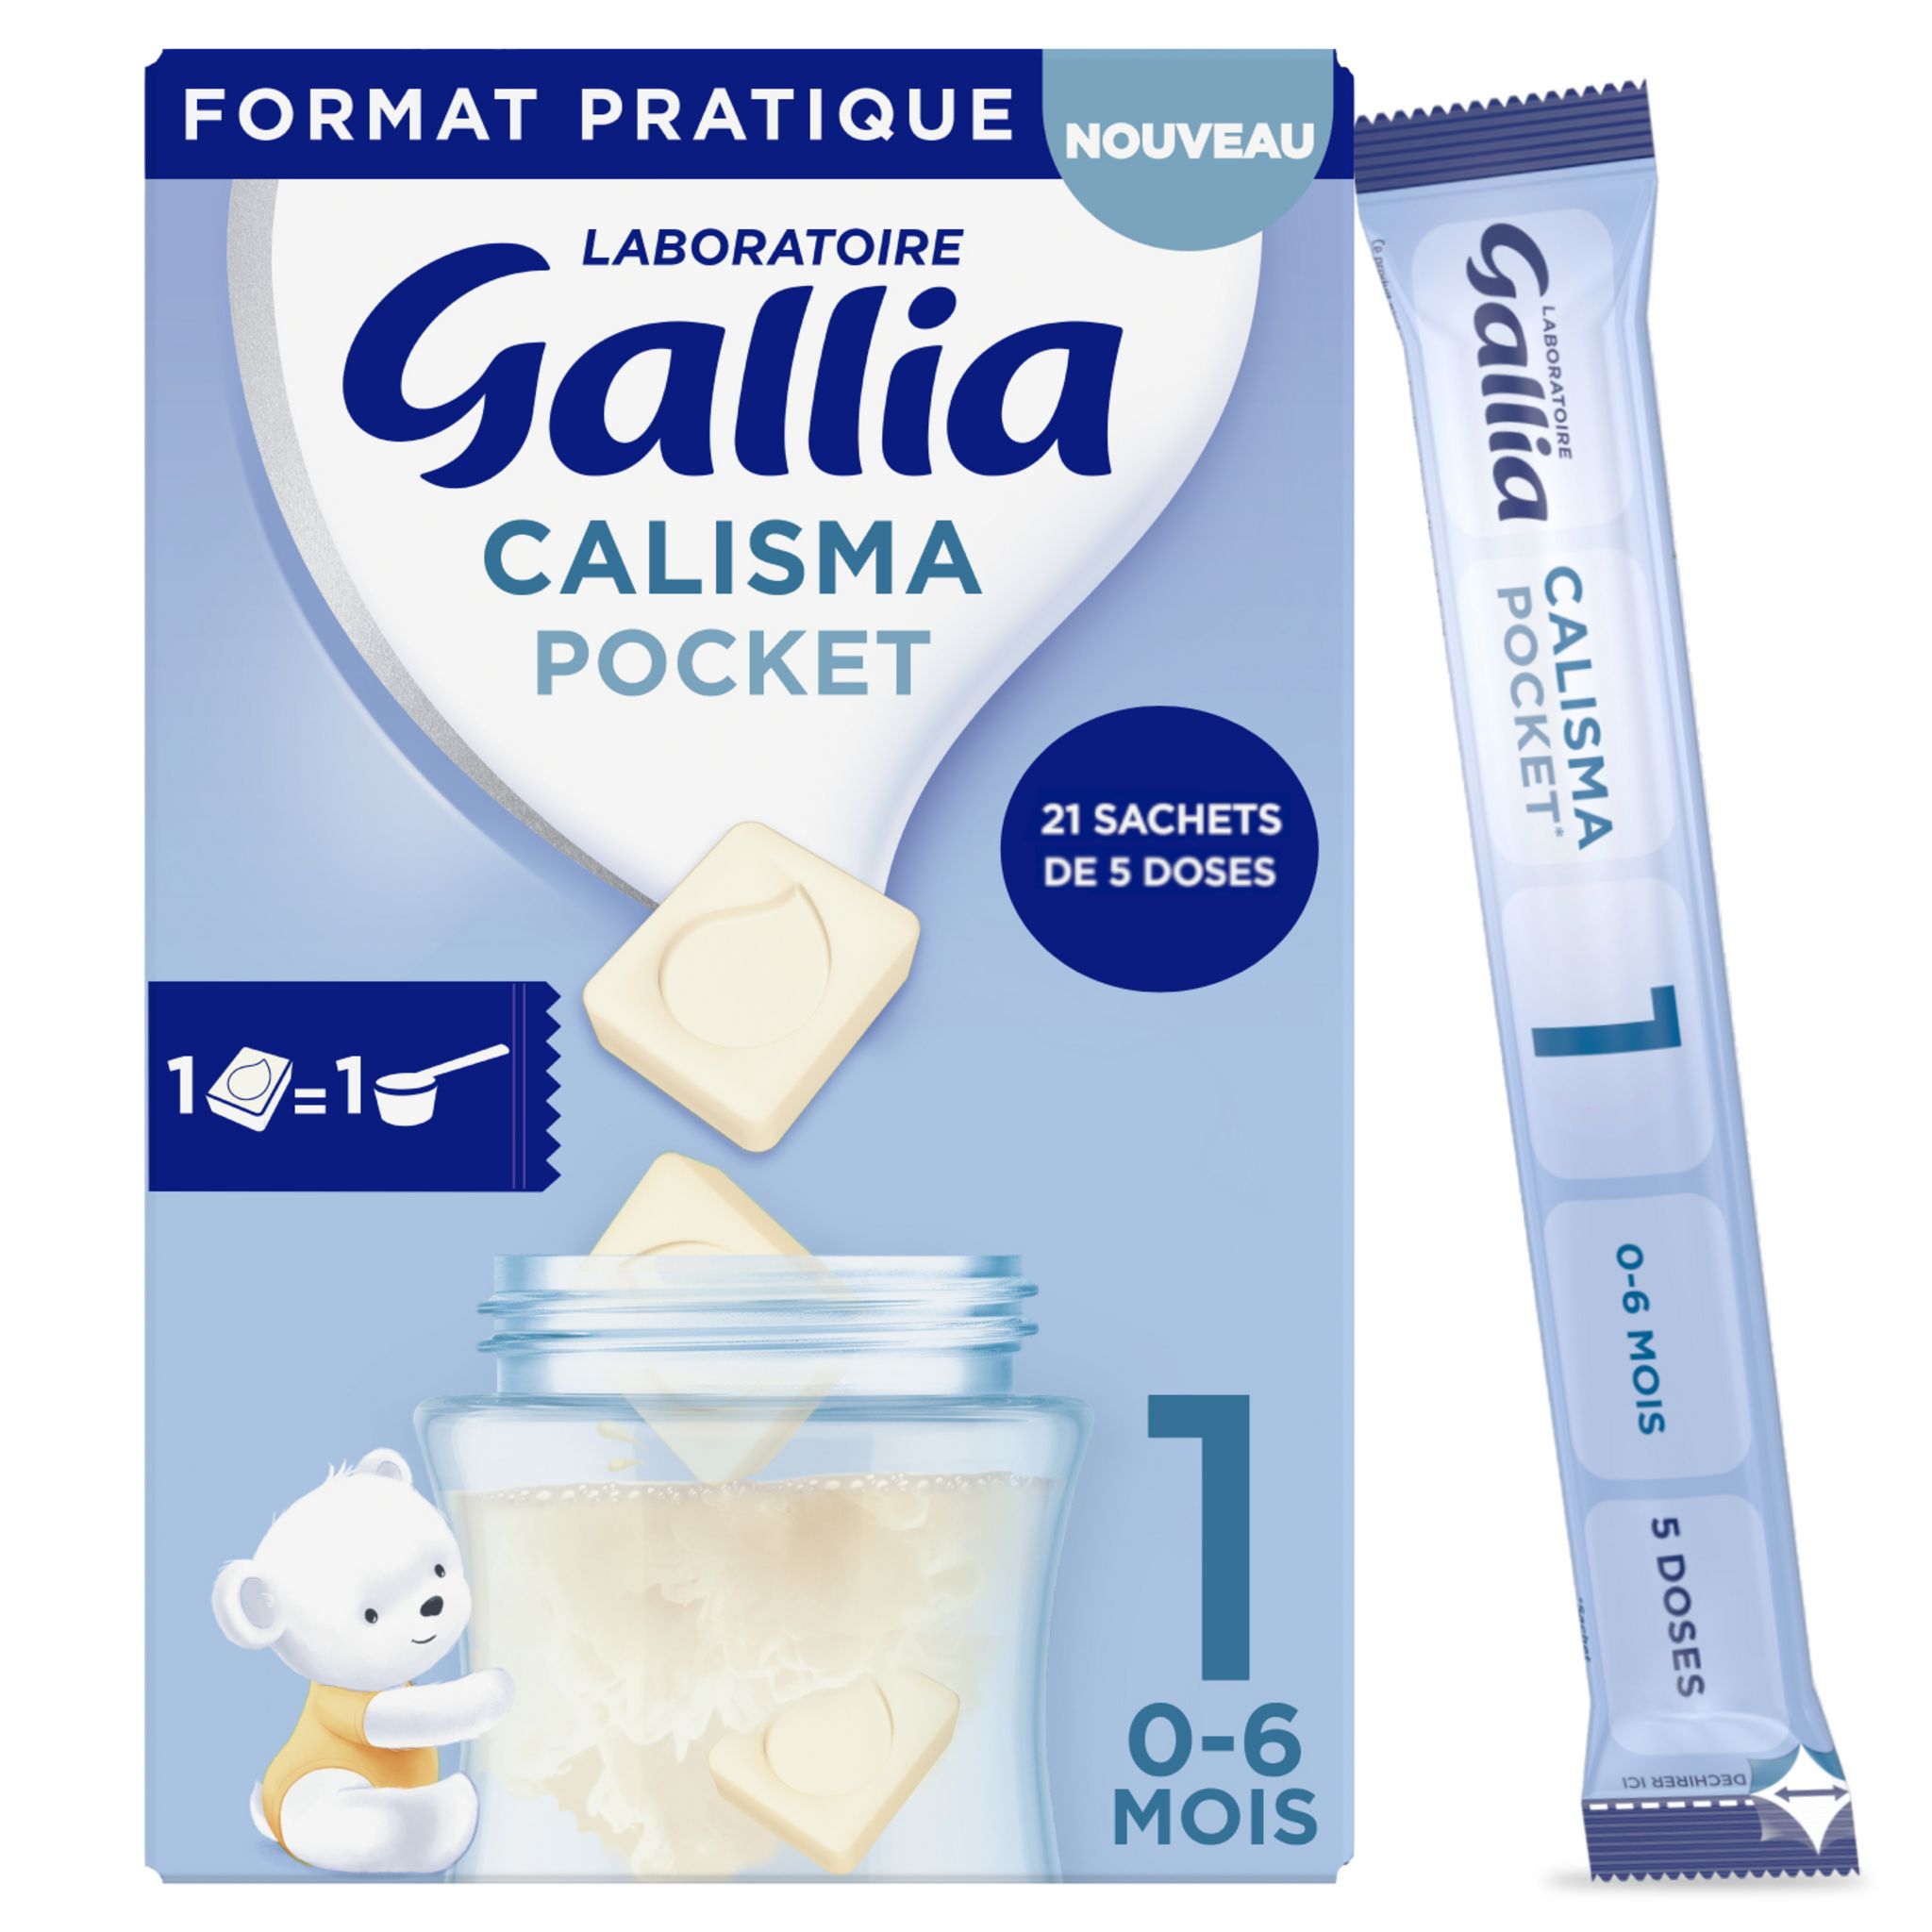 GALLIA Calisma Relais 1 Lait en poudre pour bébé - 3 x 830 g - De 0 à 6 mois